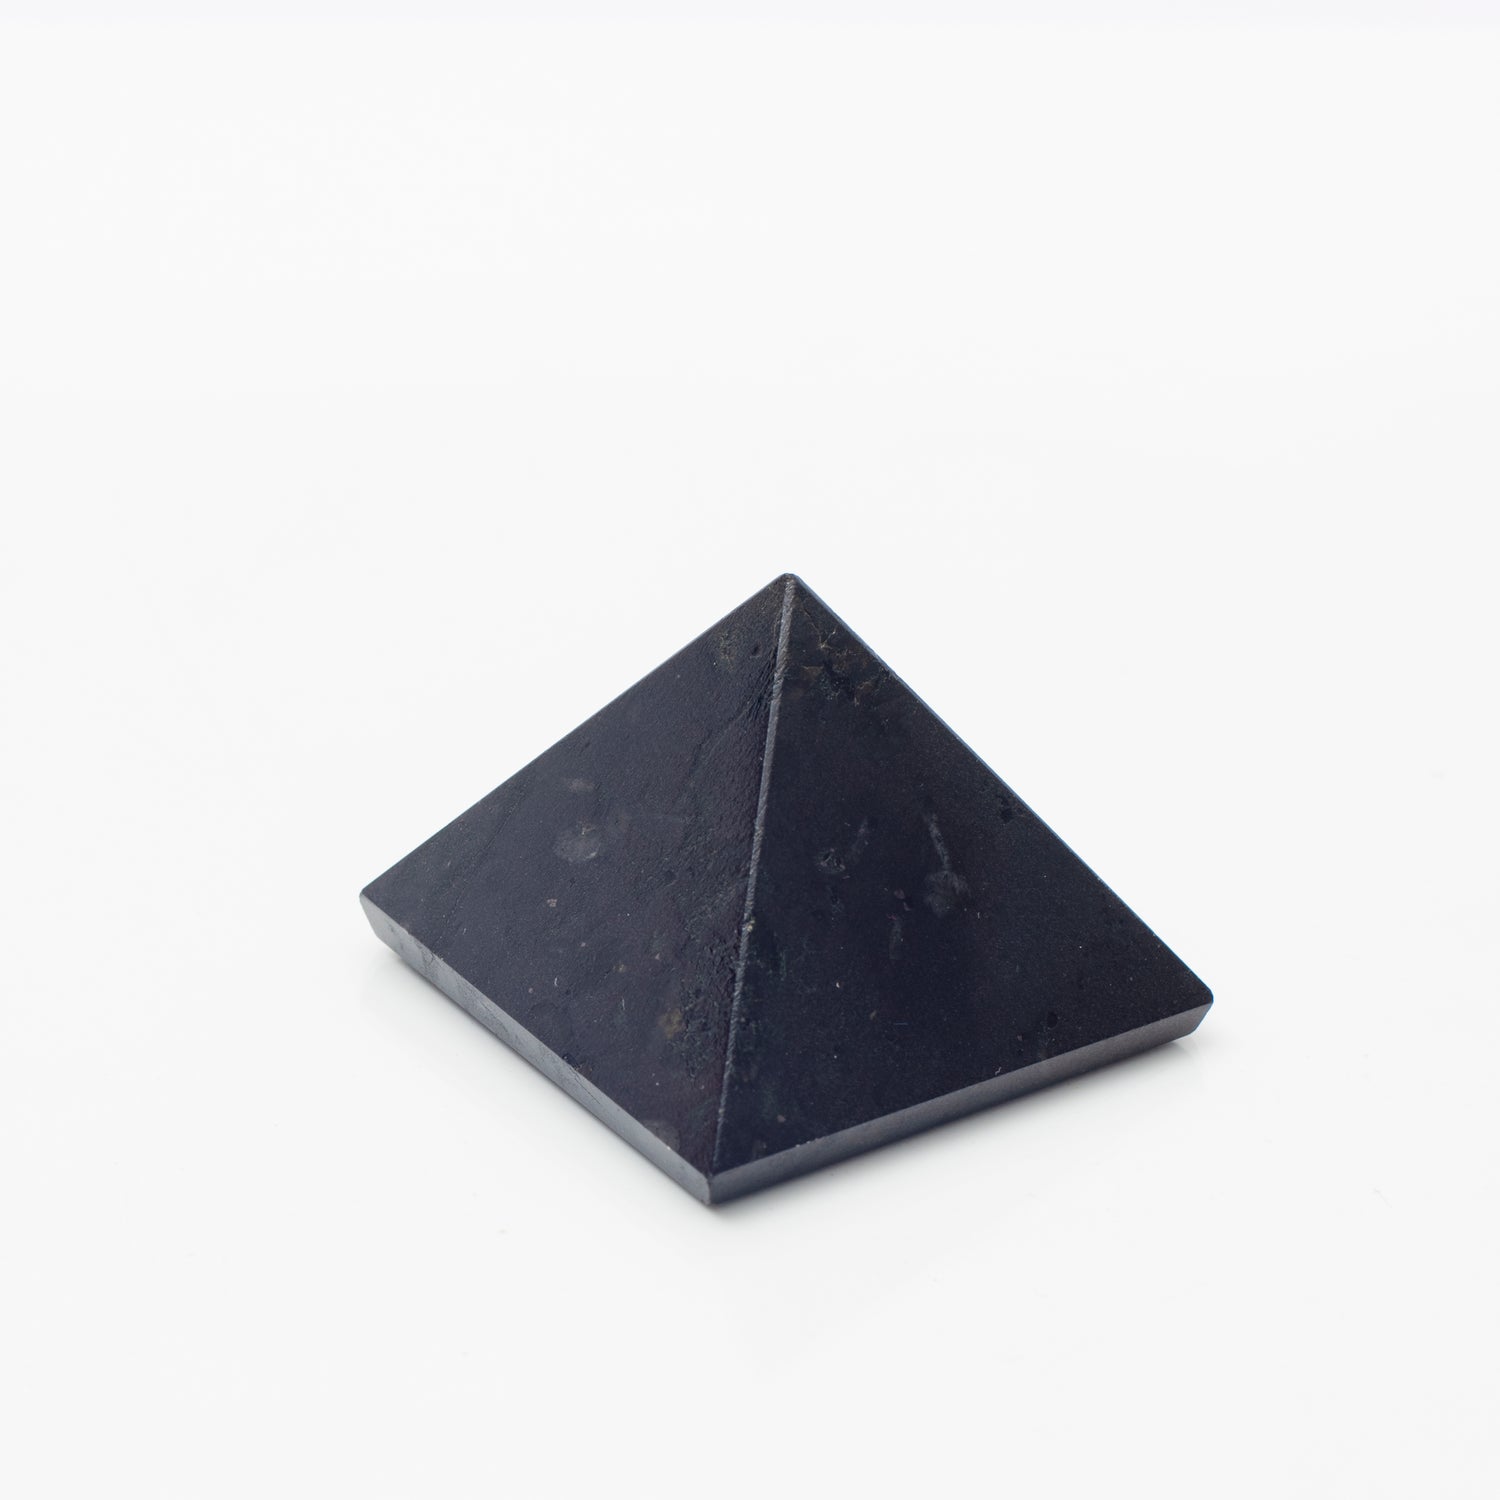 Tourmaline Black Pyramid